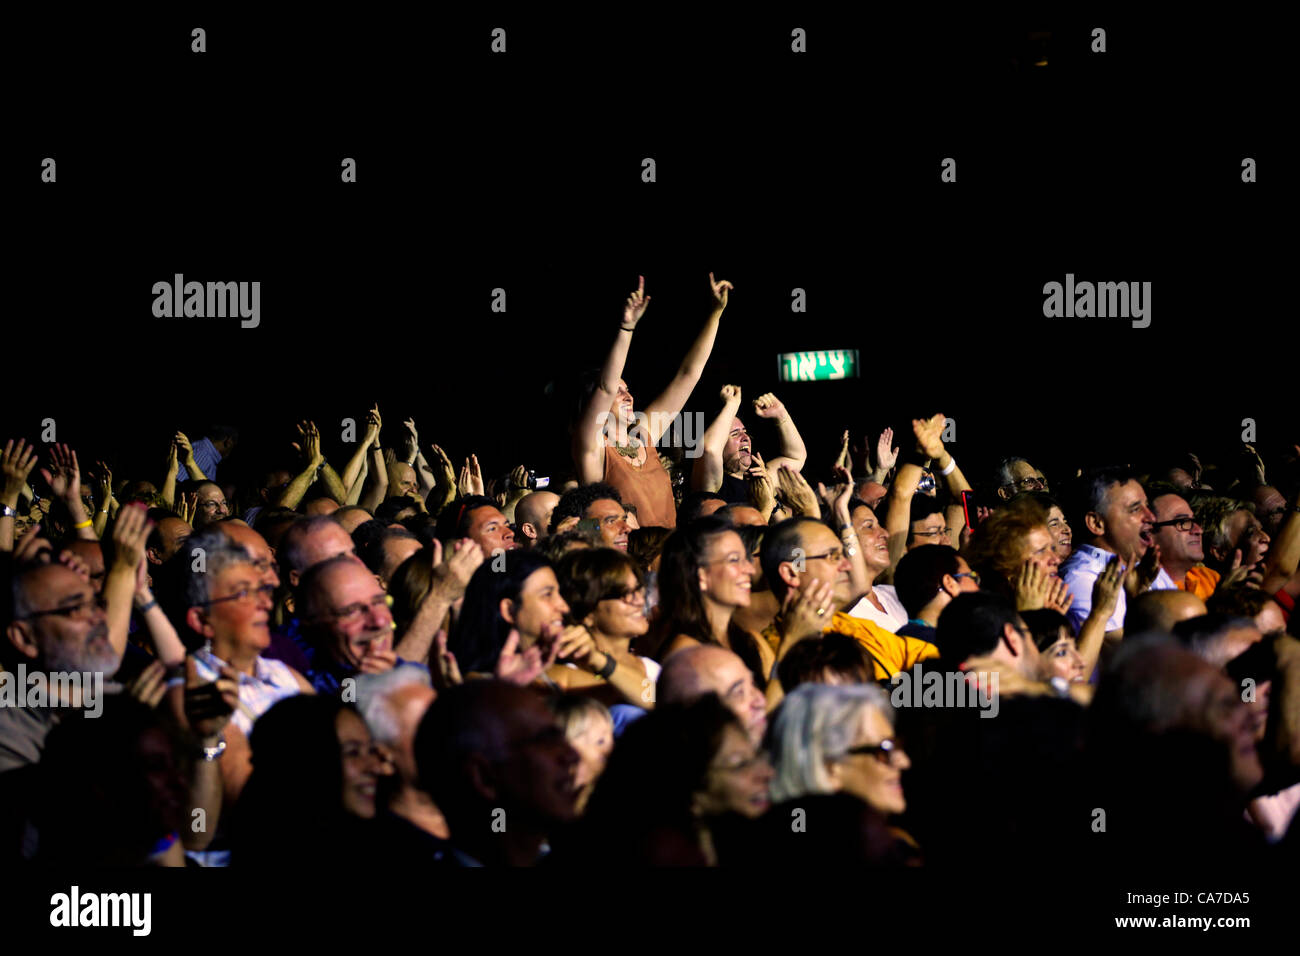 Gli amanti dei concerti si esibono in un concerto rock a Tel Aviv Israele Foto Stock